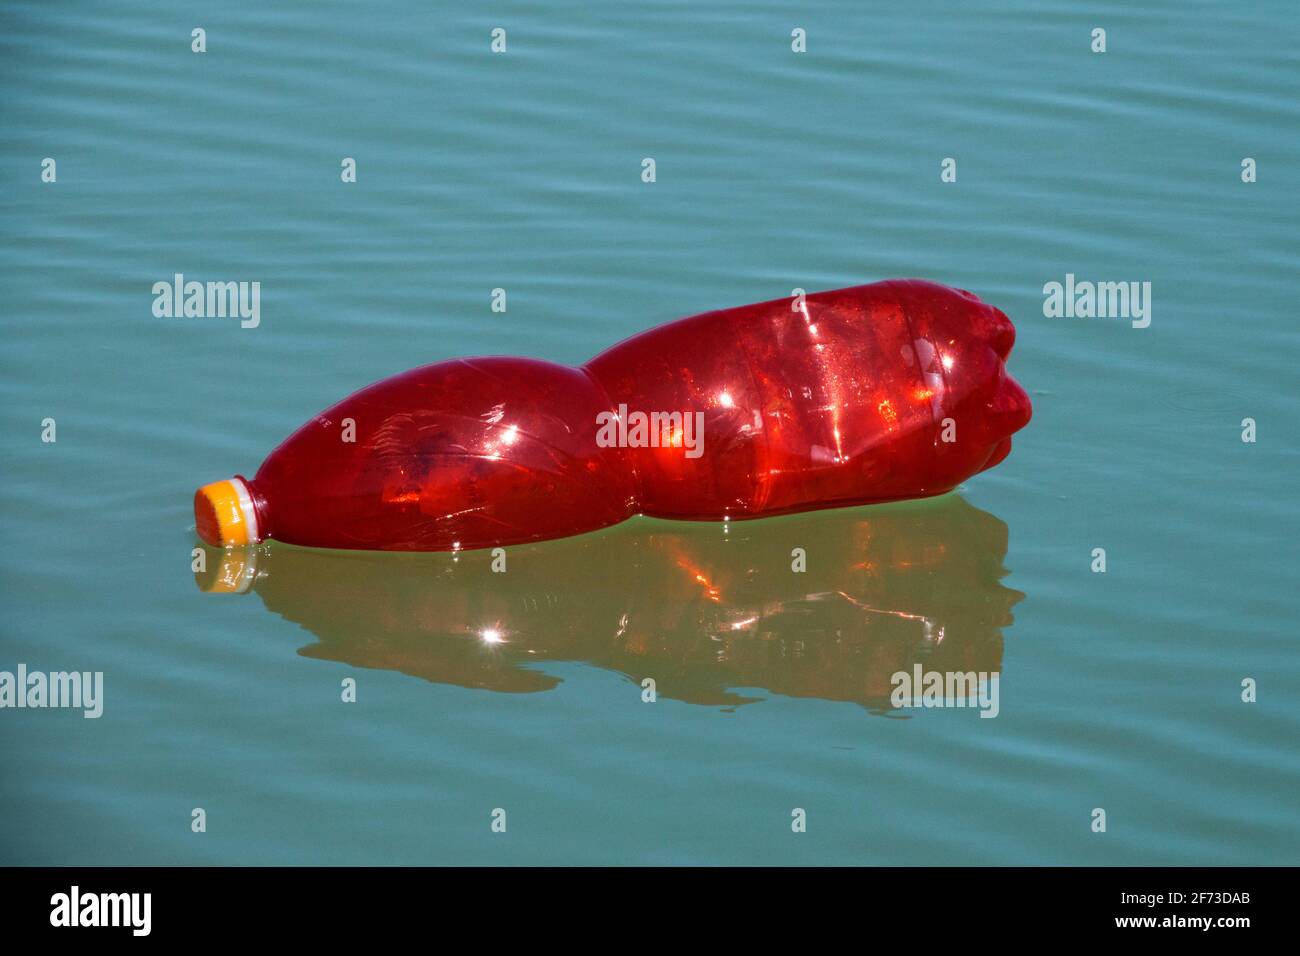 Bouteille en plastique rouge flottant sur l'eau de surface Banque D'Images